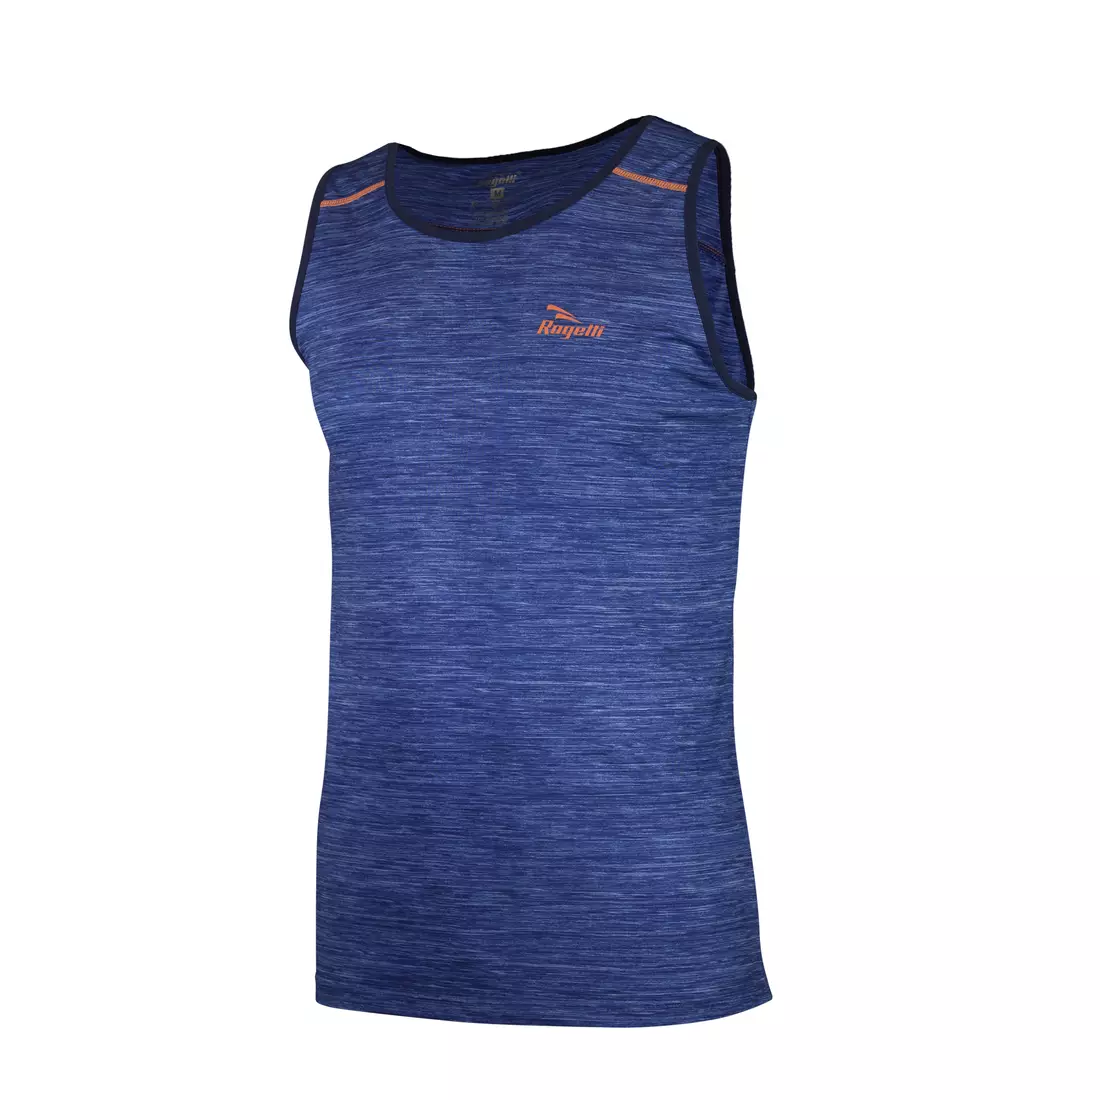 ROGELLI RUN STRUCTURE 830.241 - tricou bărbătesc, vestă de alergare, albastru și portocaliu